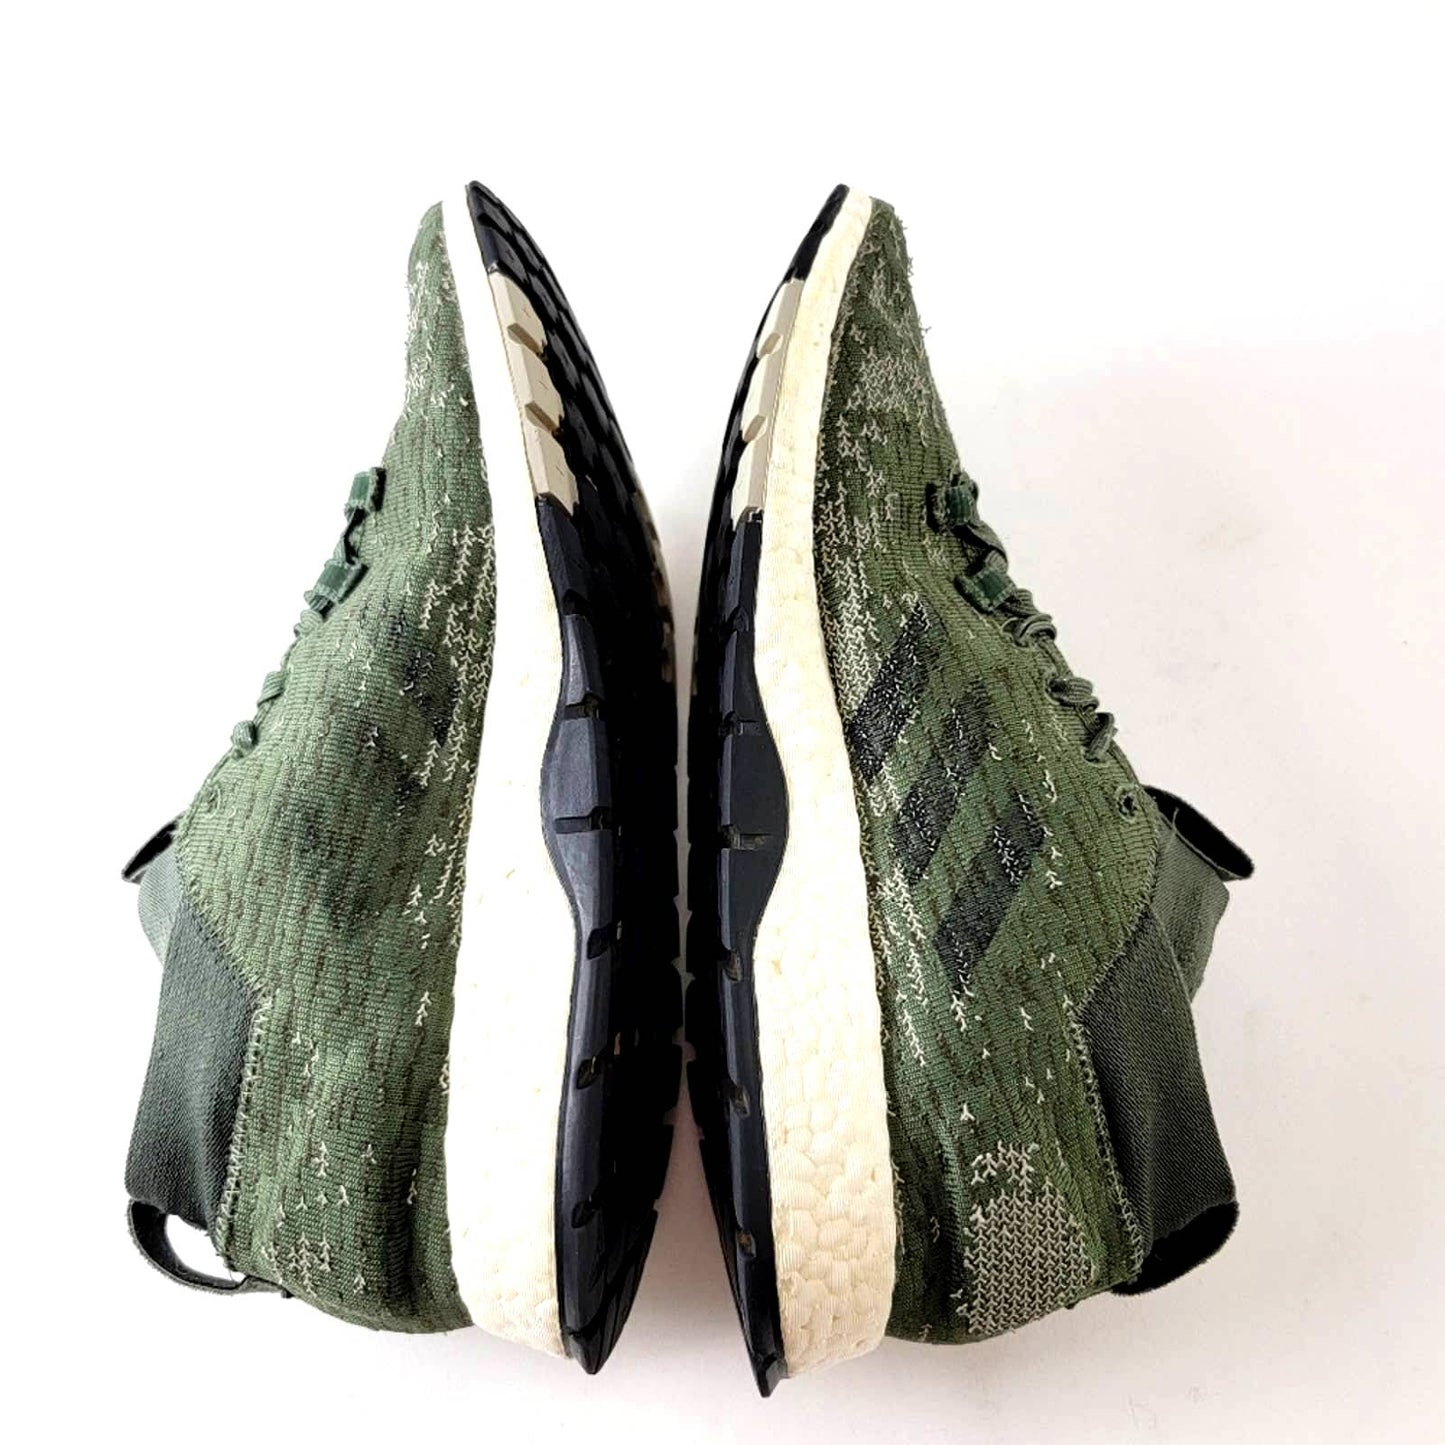 Adidas PureBOOST RBL Base Green Shoes - 10.5